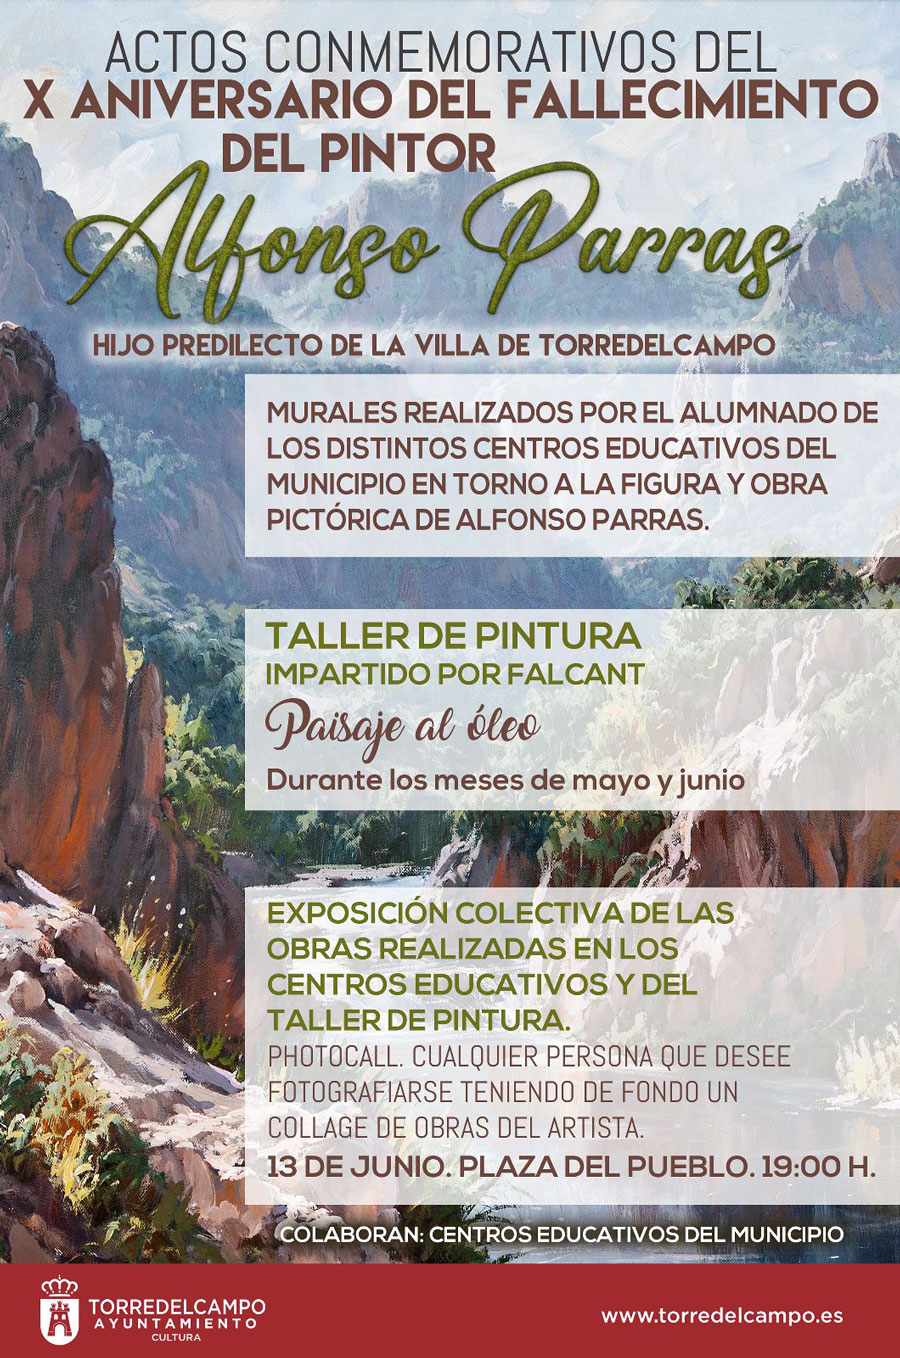 Se conmemora el X aniversario del fallecimiento del pintor “Alfonso Parras”